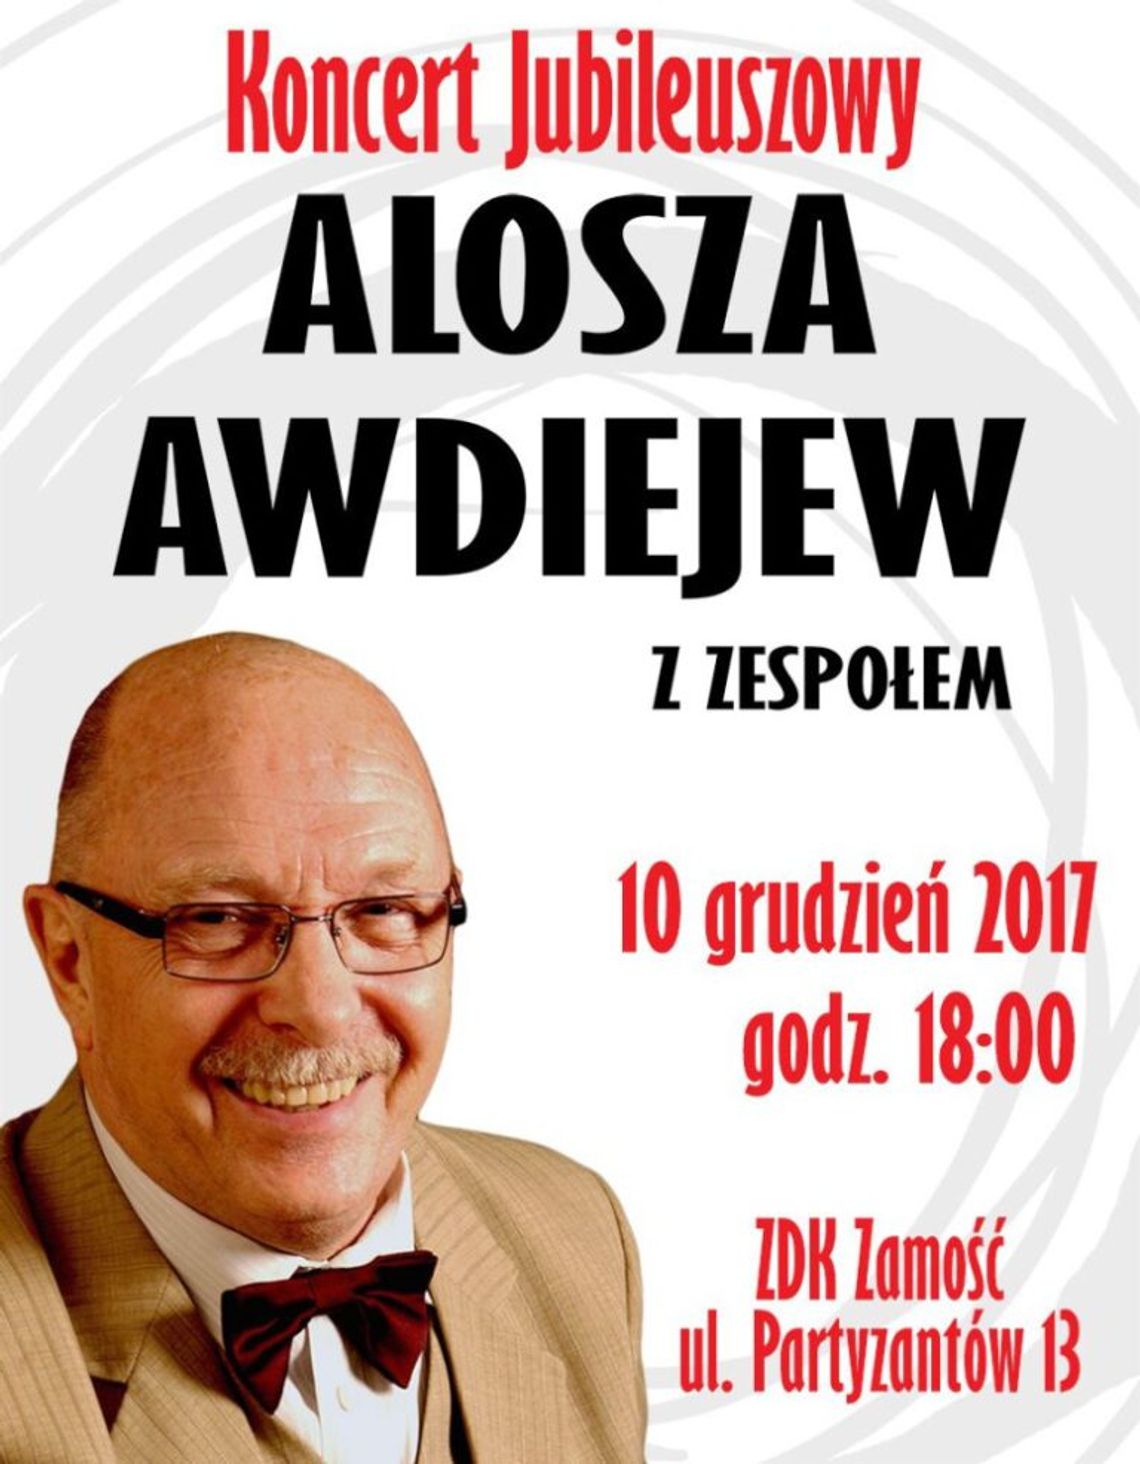 Zamość: Koncert jubileuszowy Aloszy Awdiejewa w ZDK